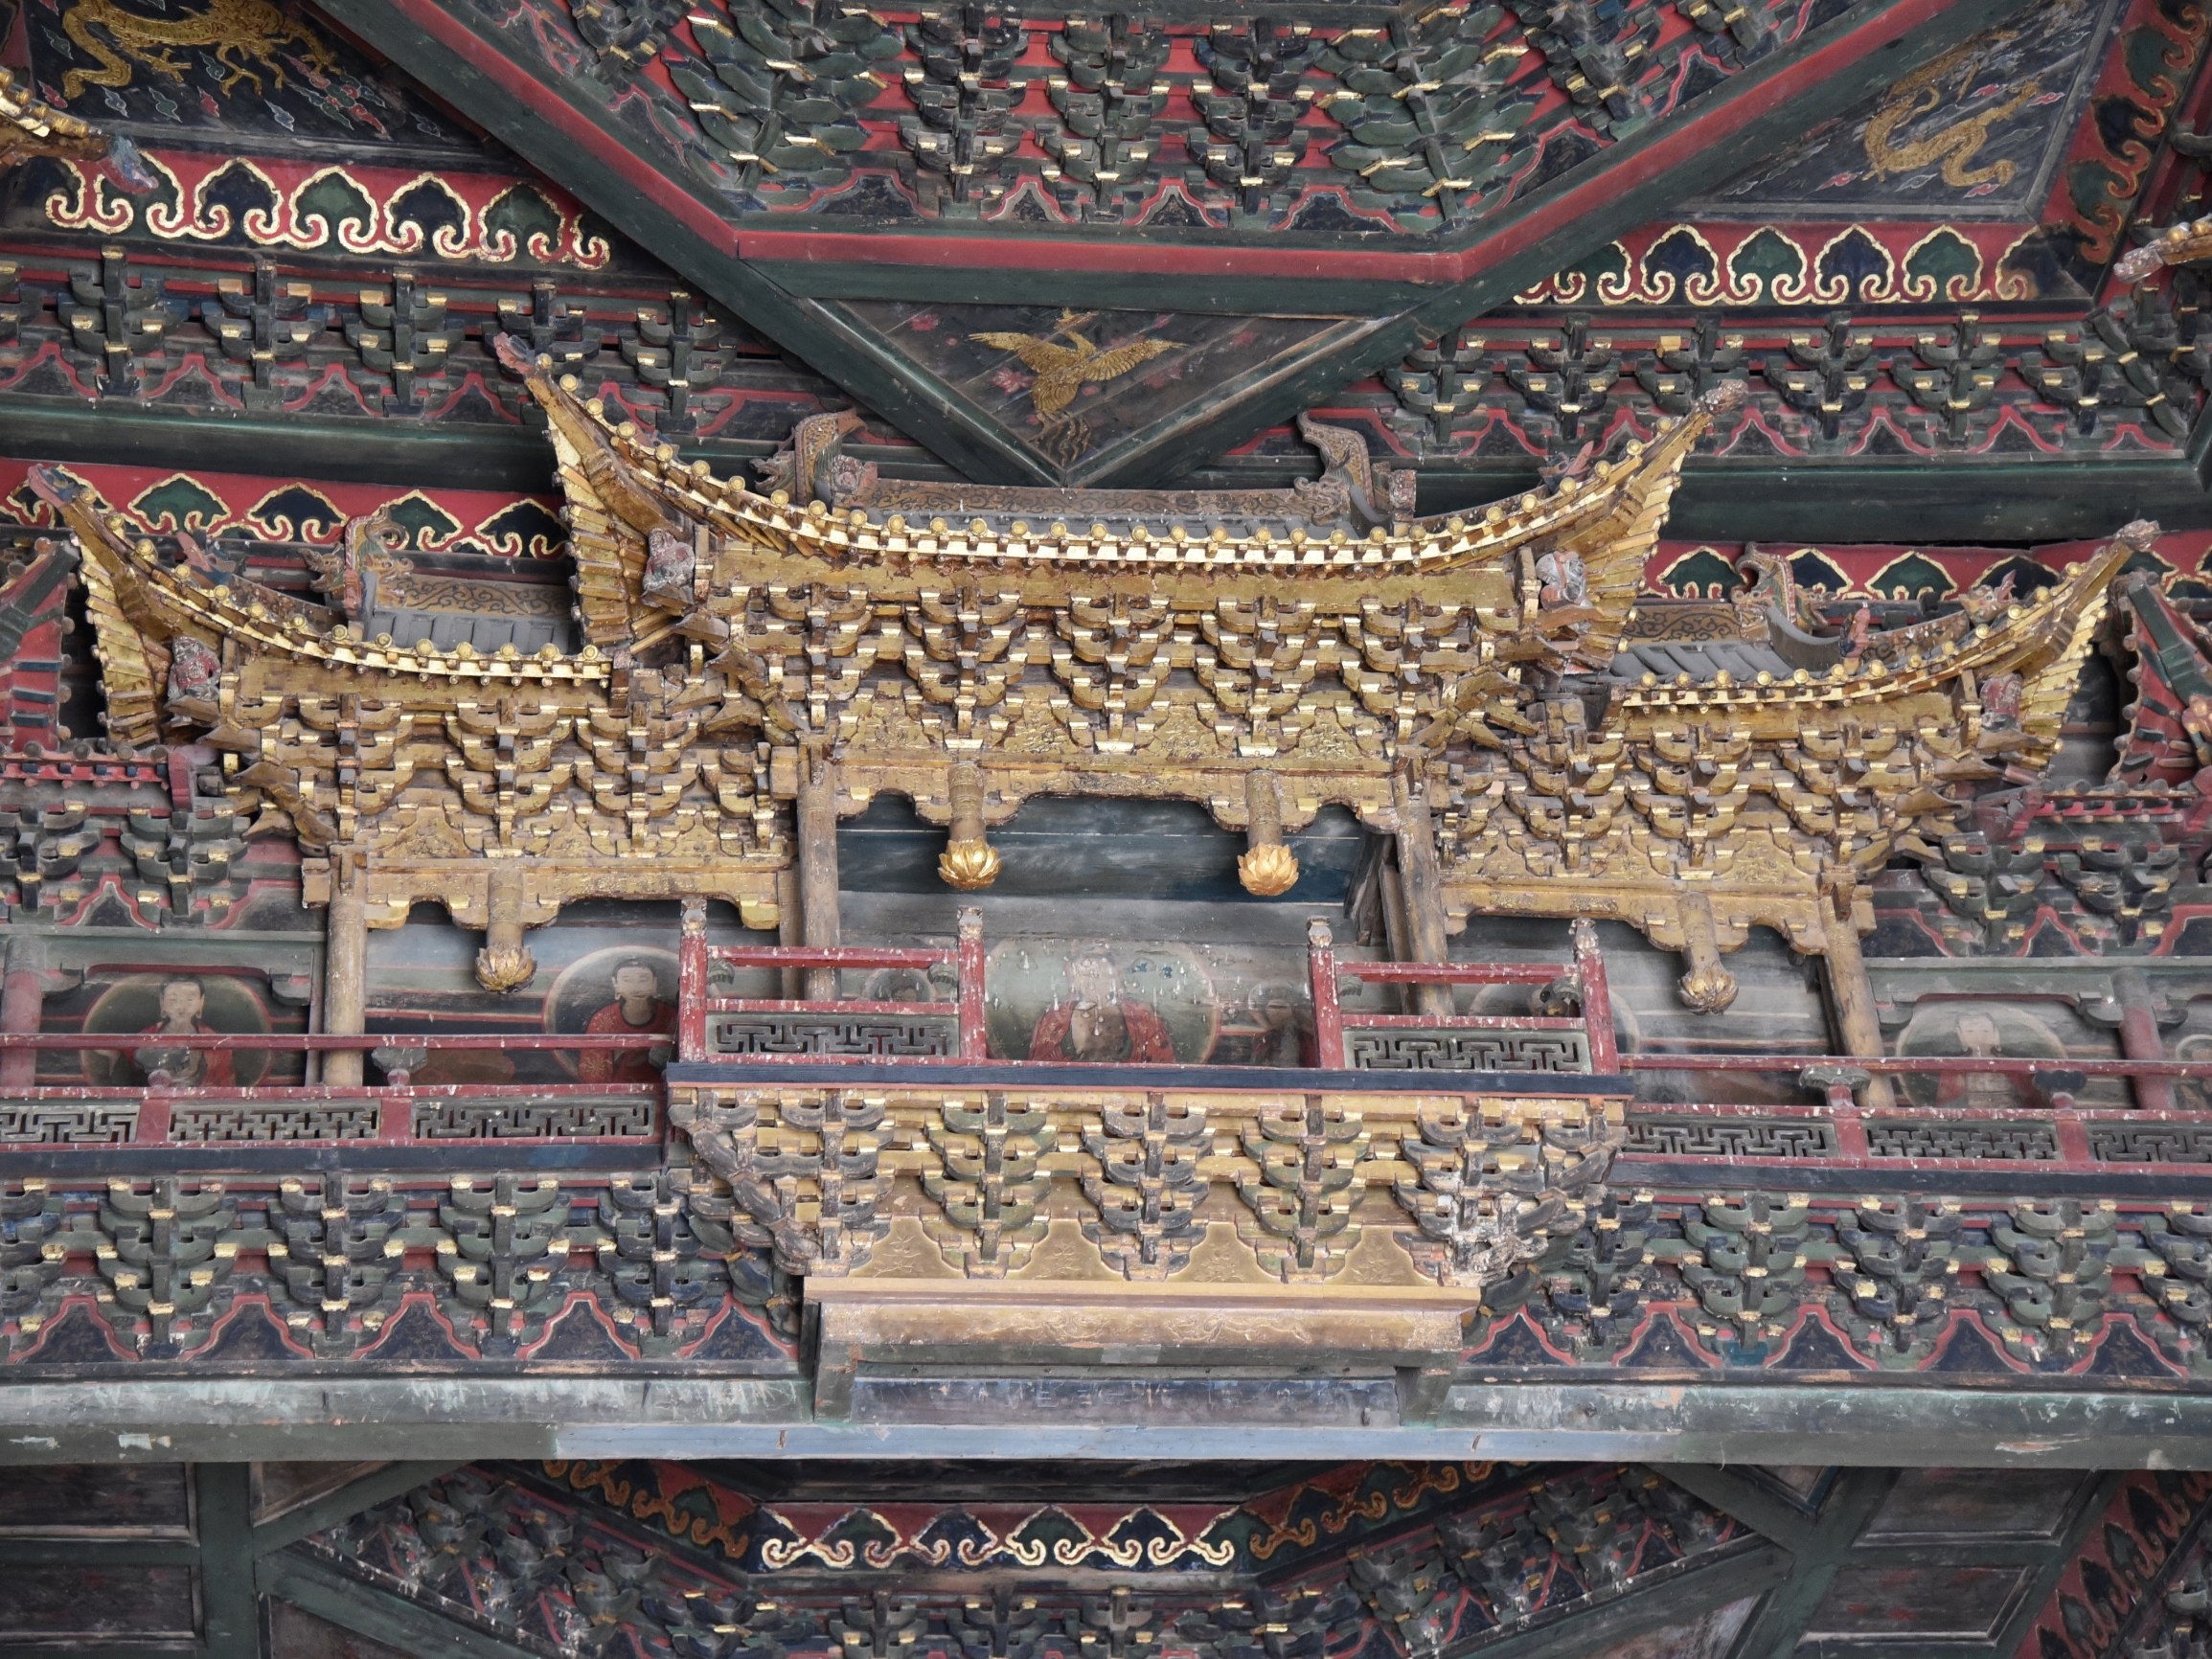 三入净土寺，才发现天宫楼阁上有壁画！ #净土寺 大殿，建于金天会二年(1124)。在这座三开间殿内，